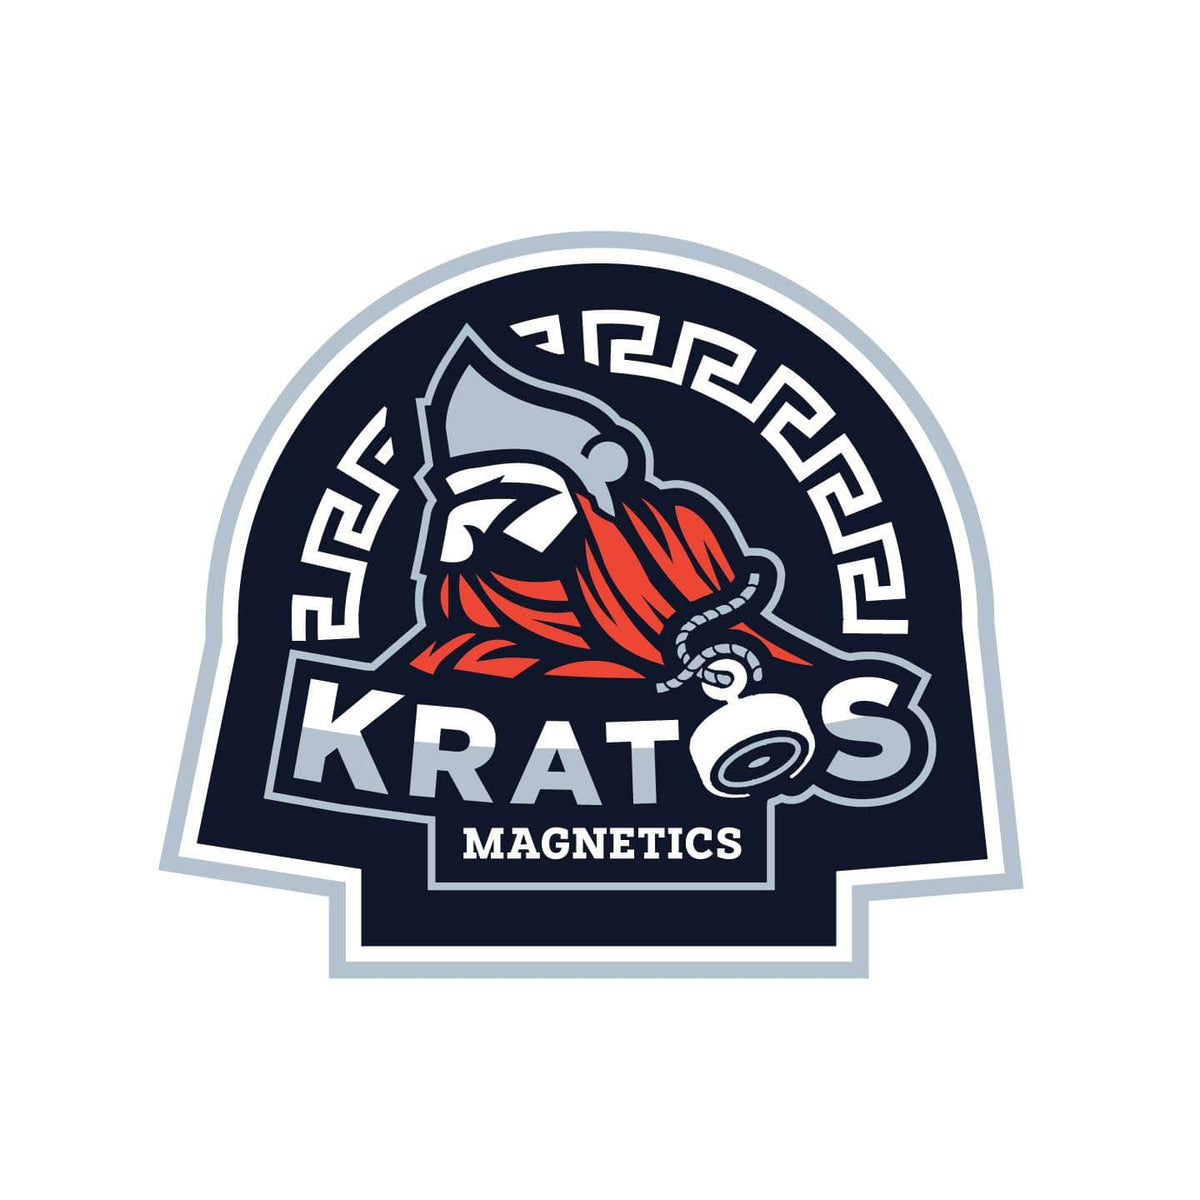 Kratos Magnet Fishing Gear – Kratos Magnetics LLC